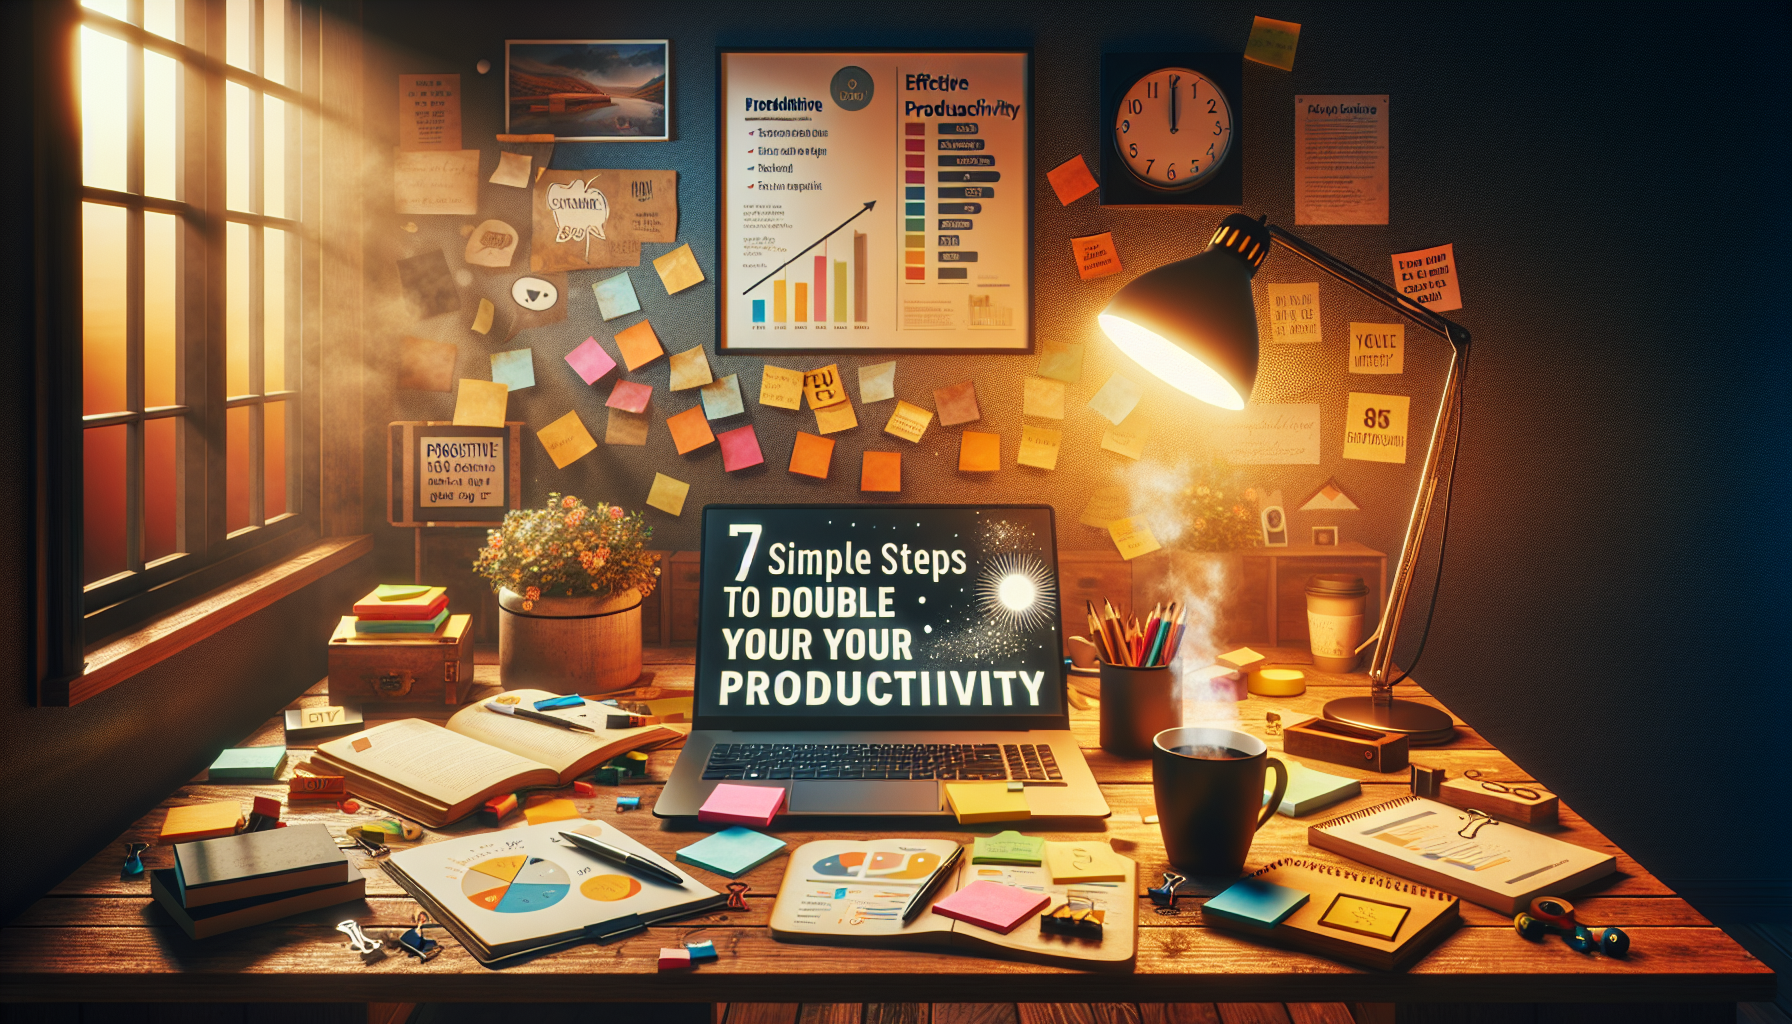 découvrez notre guide pratique pour doubler votre productivité personnelle en seulement 7 étapes simples. apprenez à optimiser votre temps, à gérer vos priorités et à atteindre vos objectifs plus efficacement grâce à des conseils faciles à mettre en œuvre.